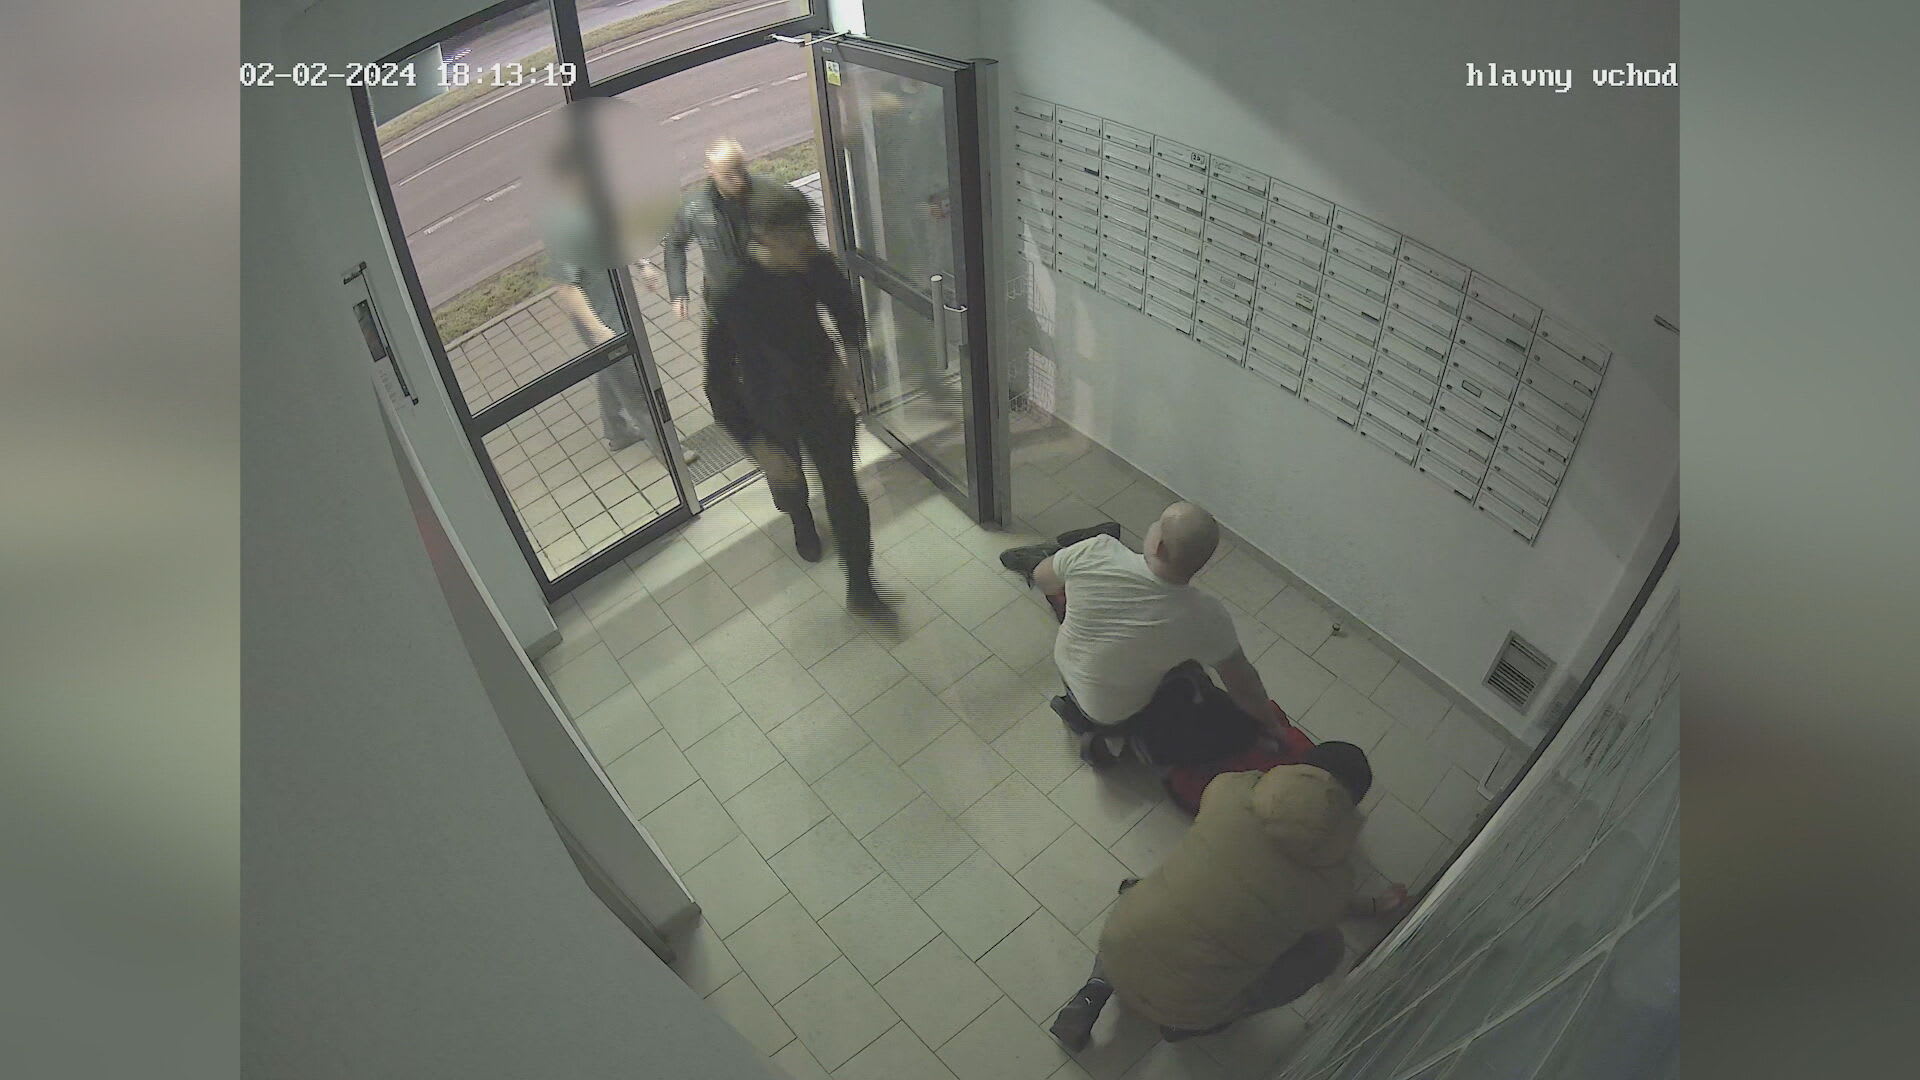 Muž na Slovensku obtěžoval ženu ve výtahu, zachránili ji pohotoví svědci